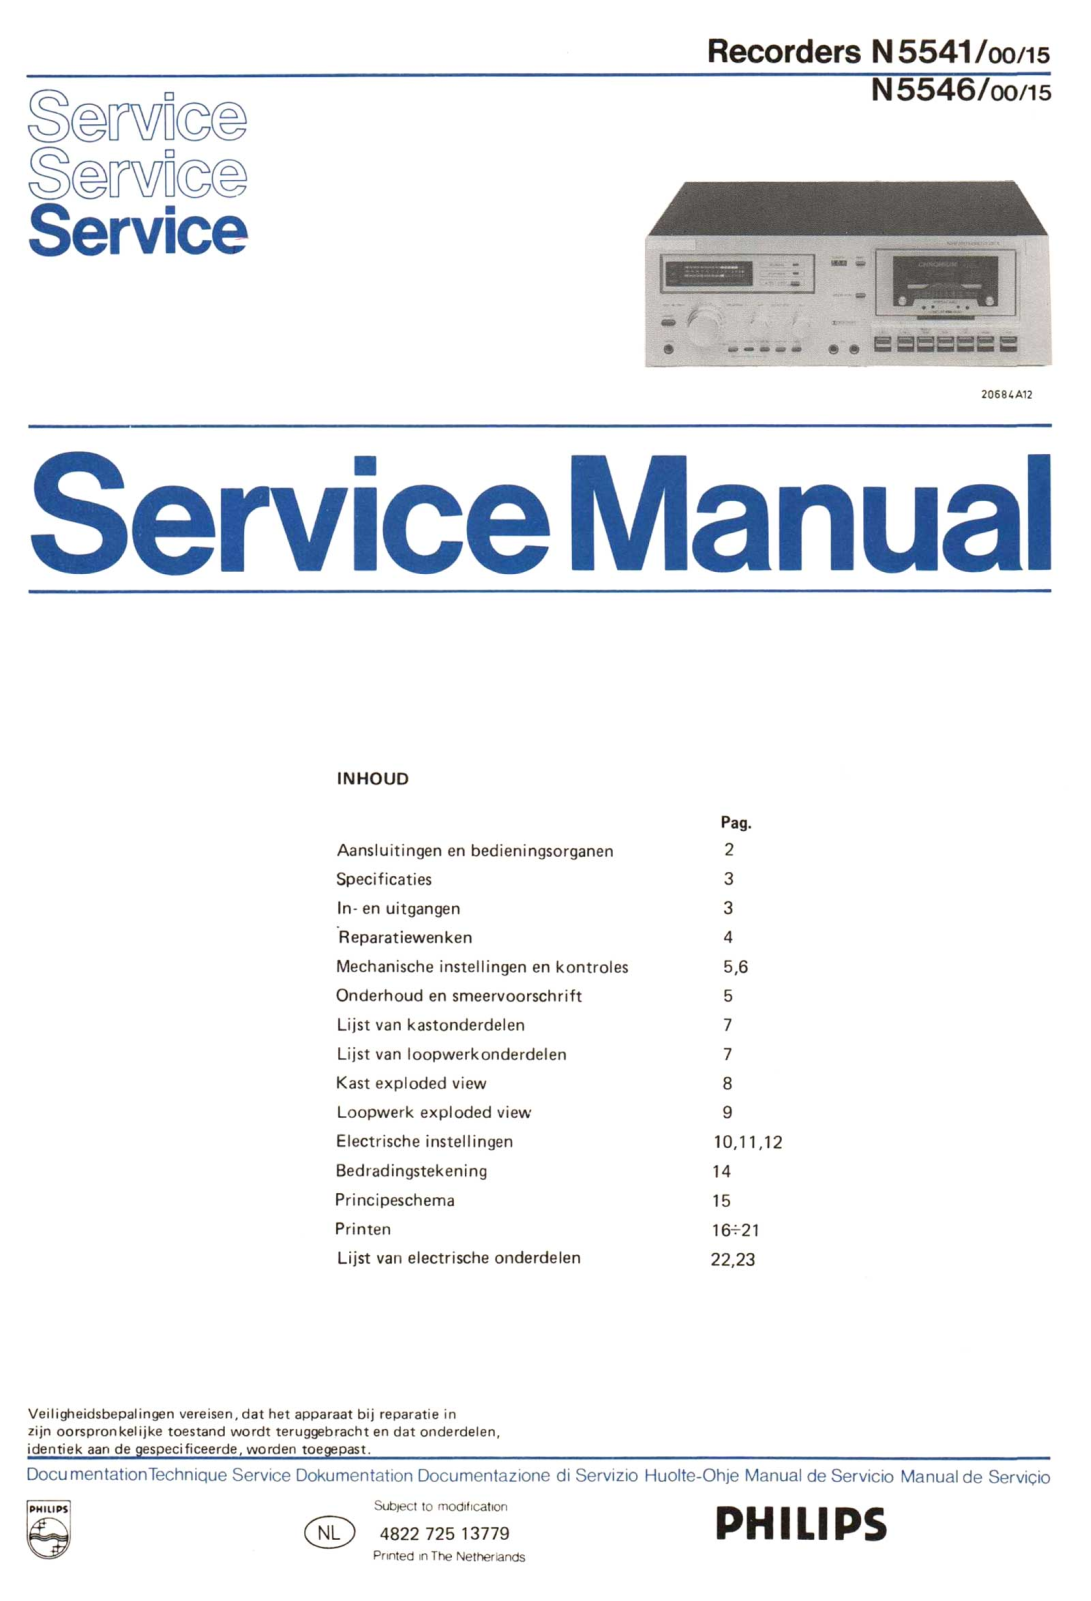 Philips N-5546, N-5541 Service Manual